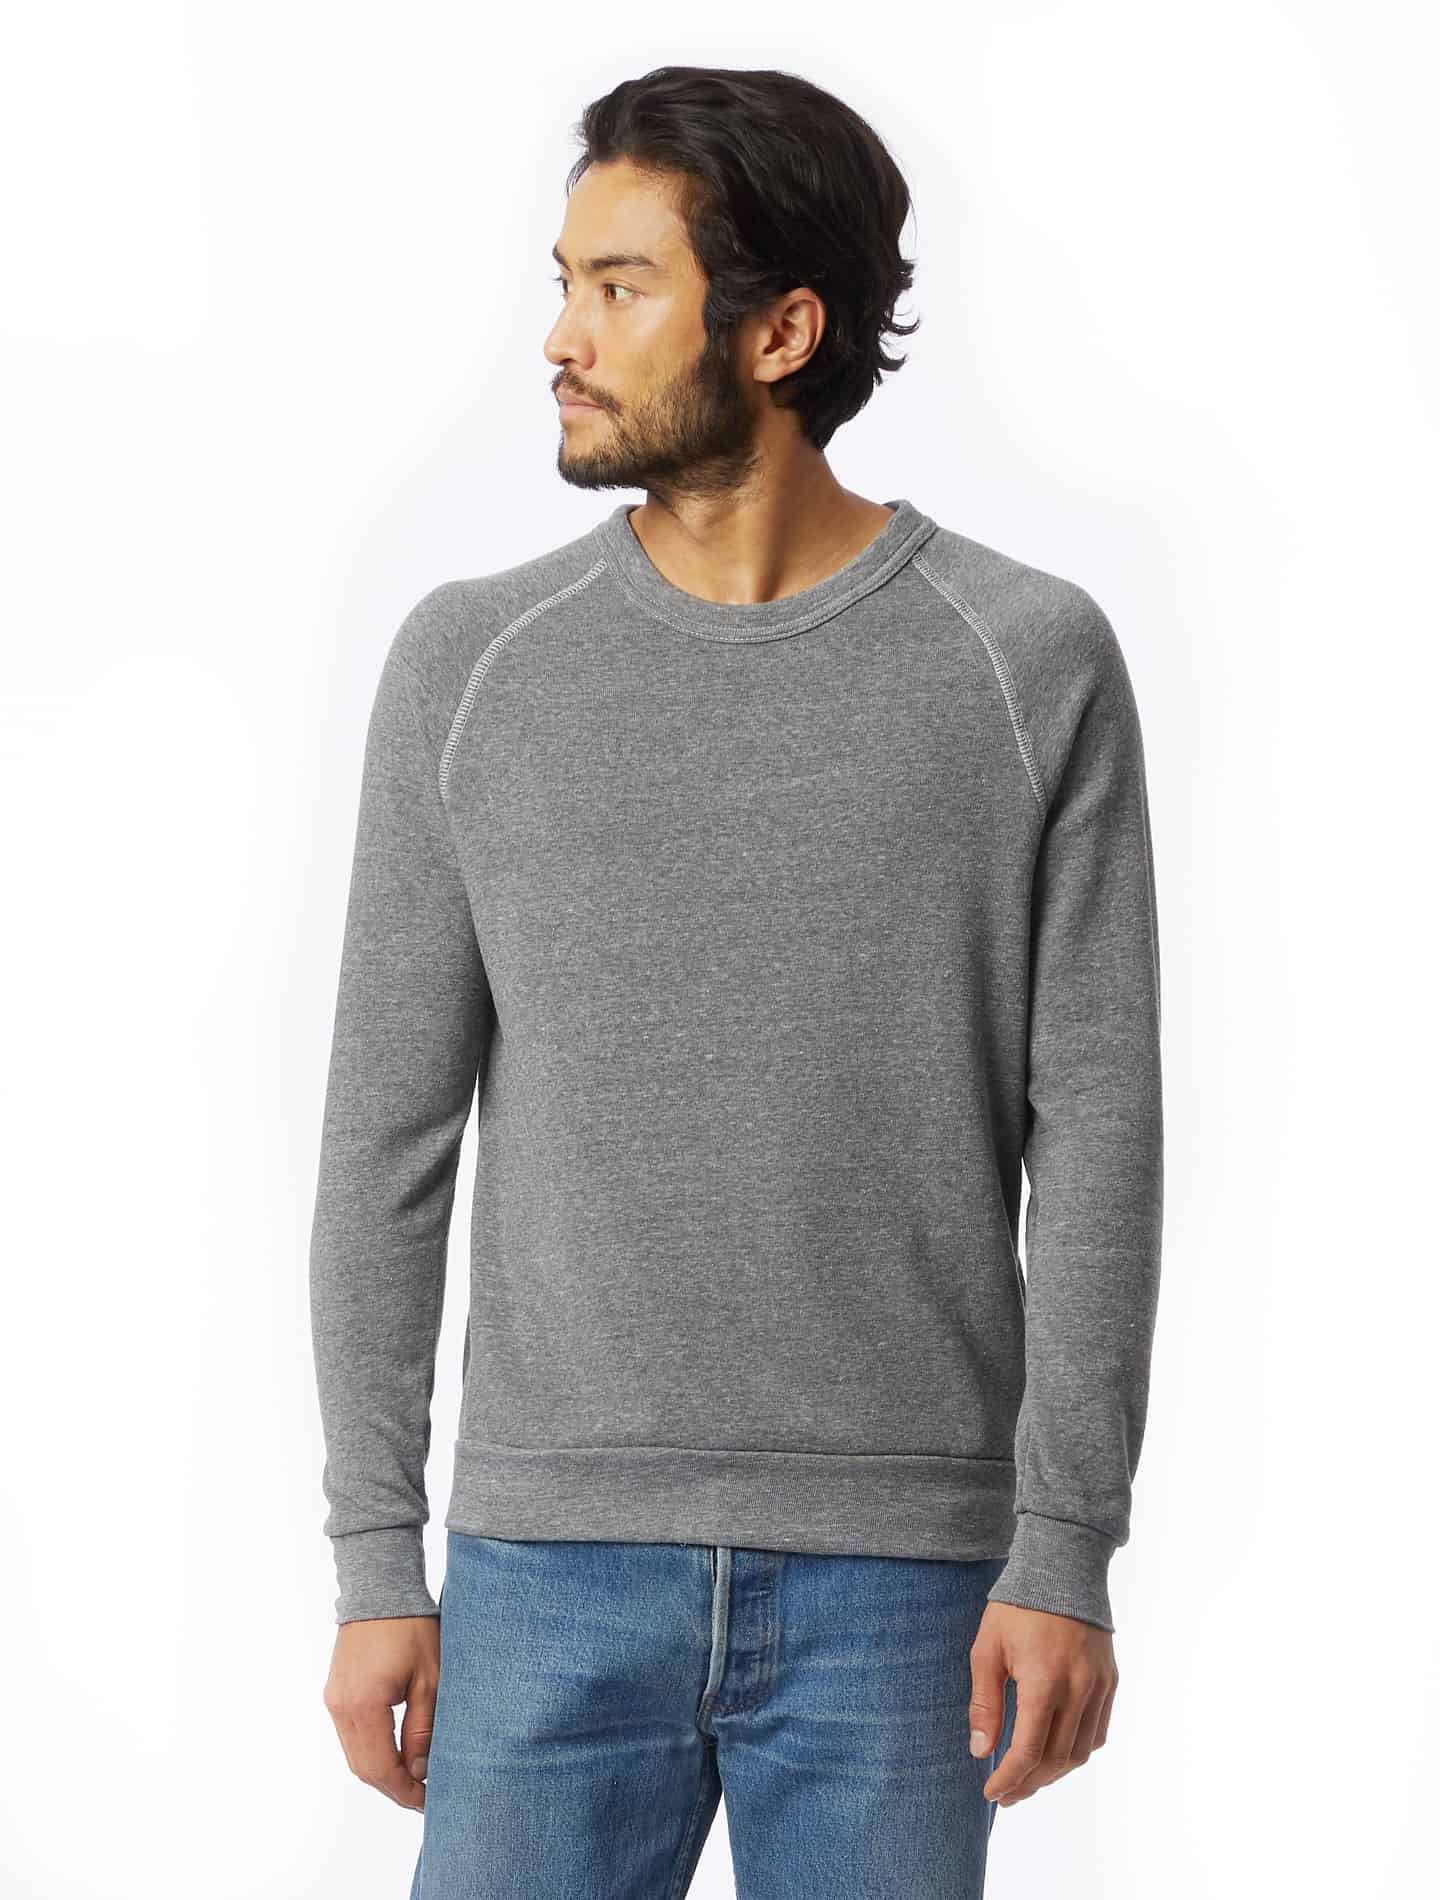 Most Comfortable Crew Neck Sweatshirts for Men | ComfortNerd